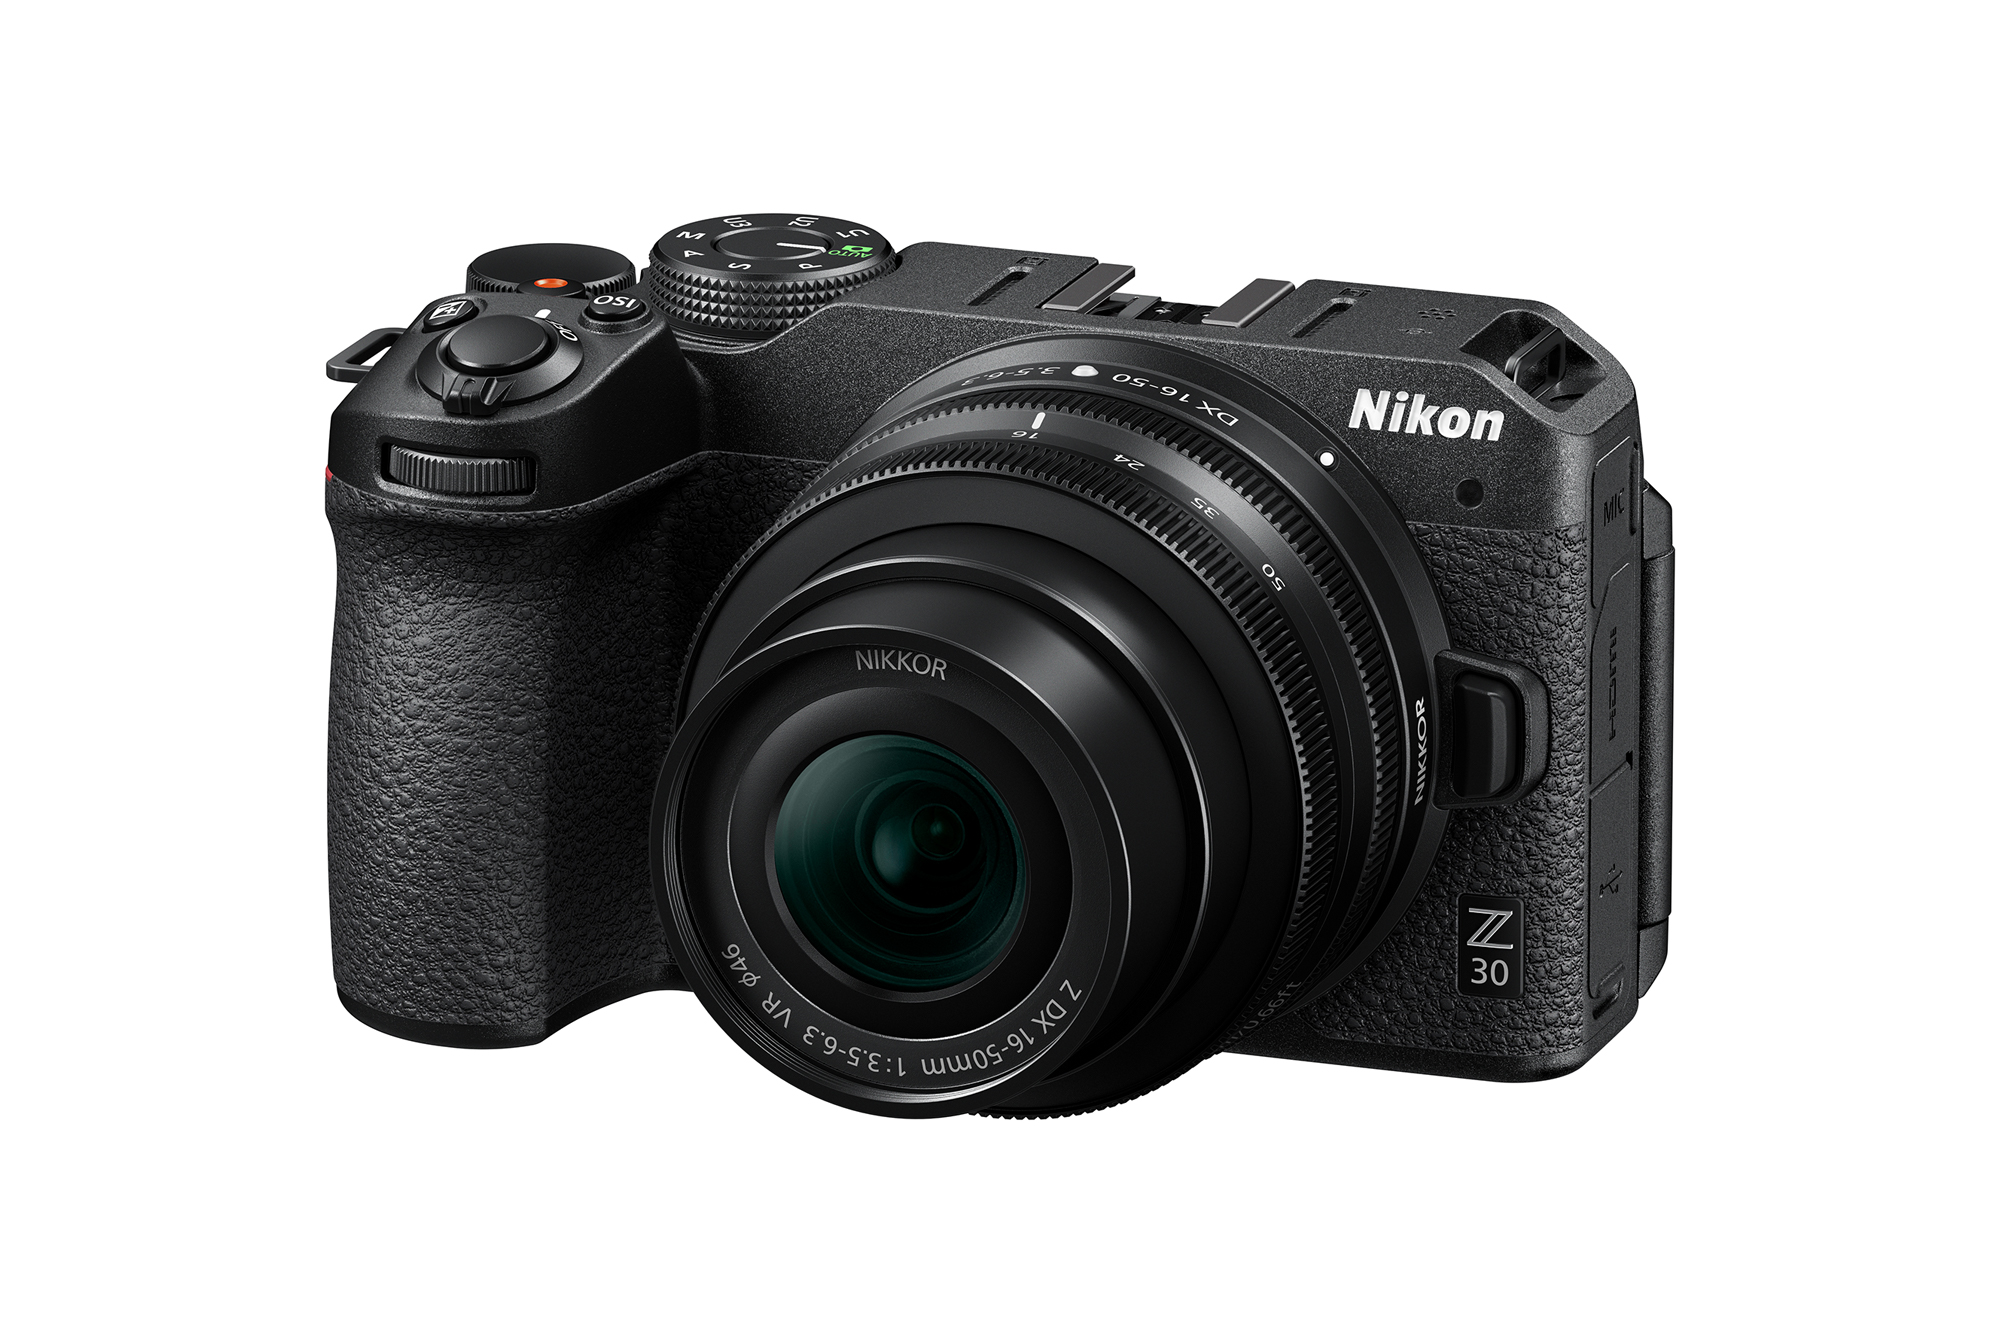 ニコン、Vlogに適したAPS-Cサイズミラーレスカメラ ニコン Z 30を